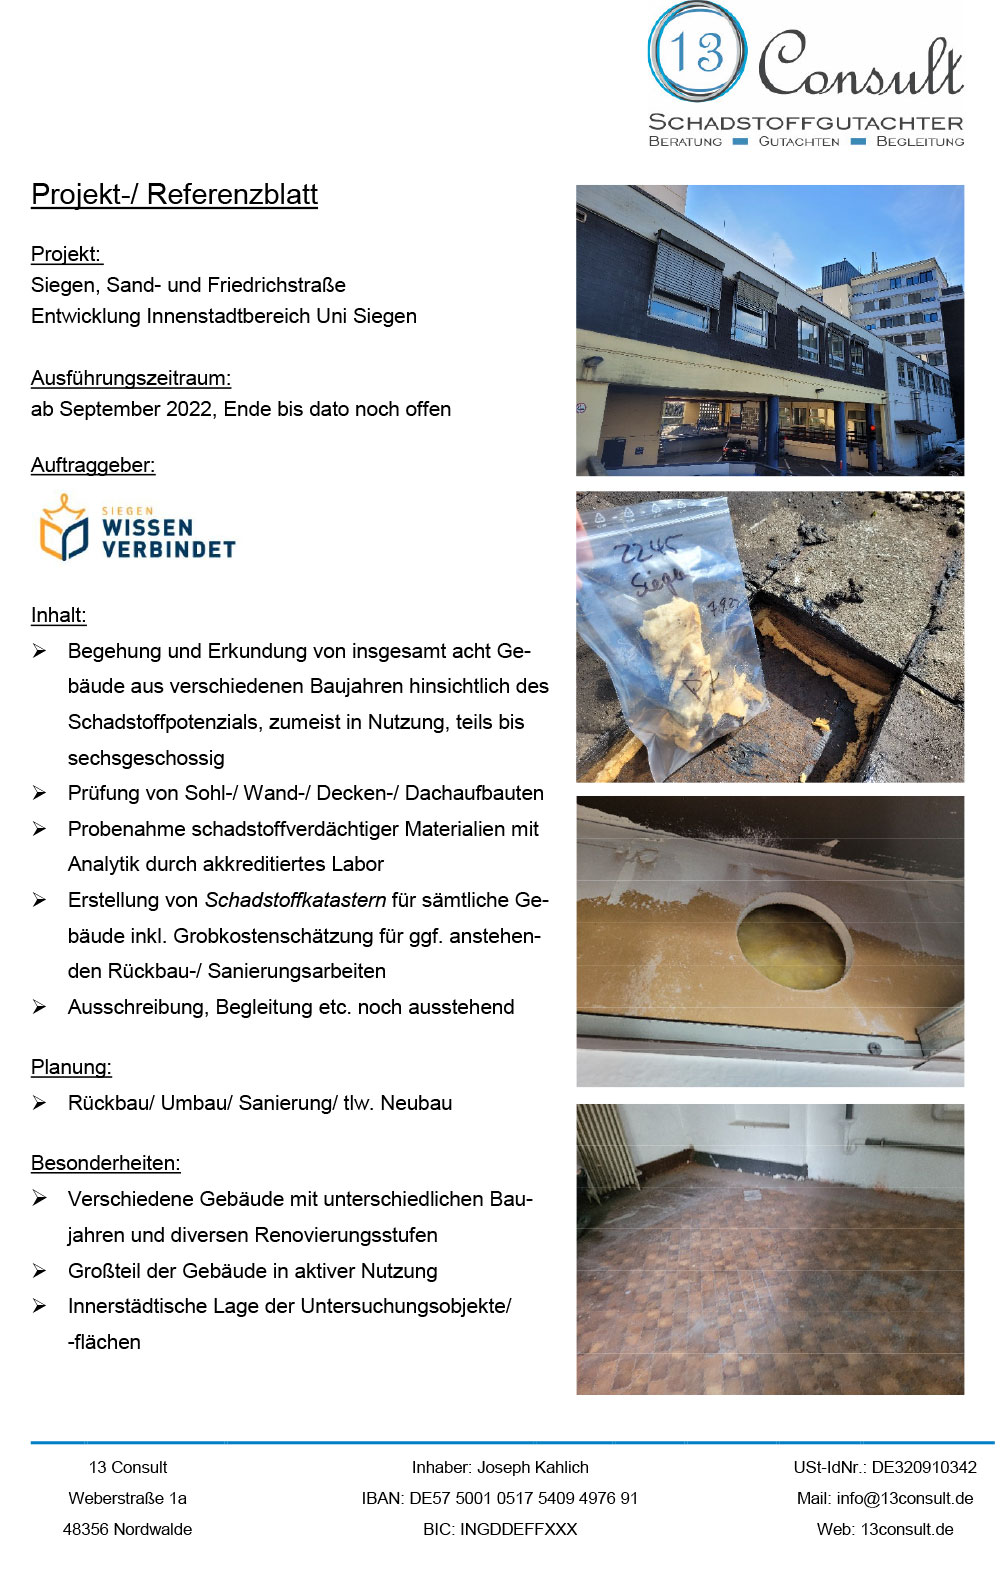 7_Projektblatt-Siegen,-Sand--und-Friedrichstr